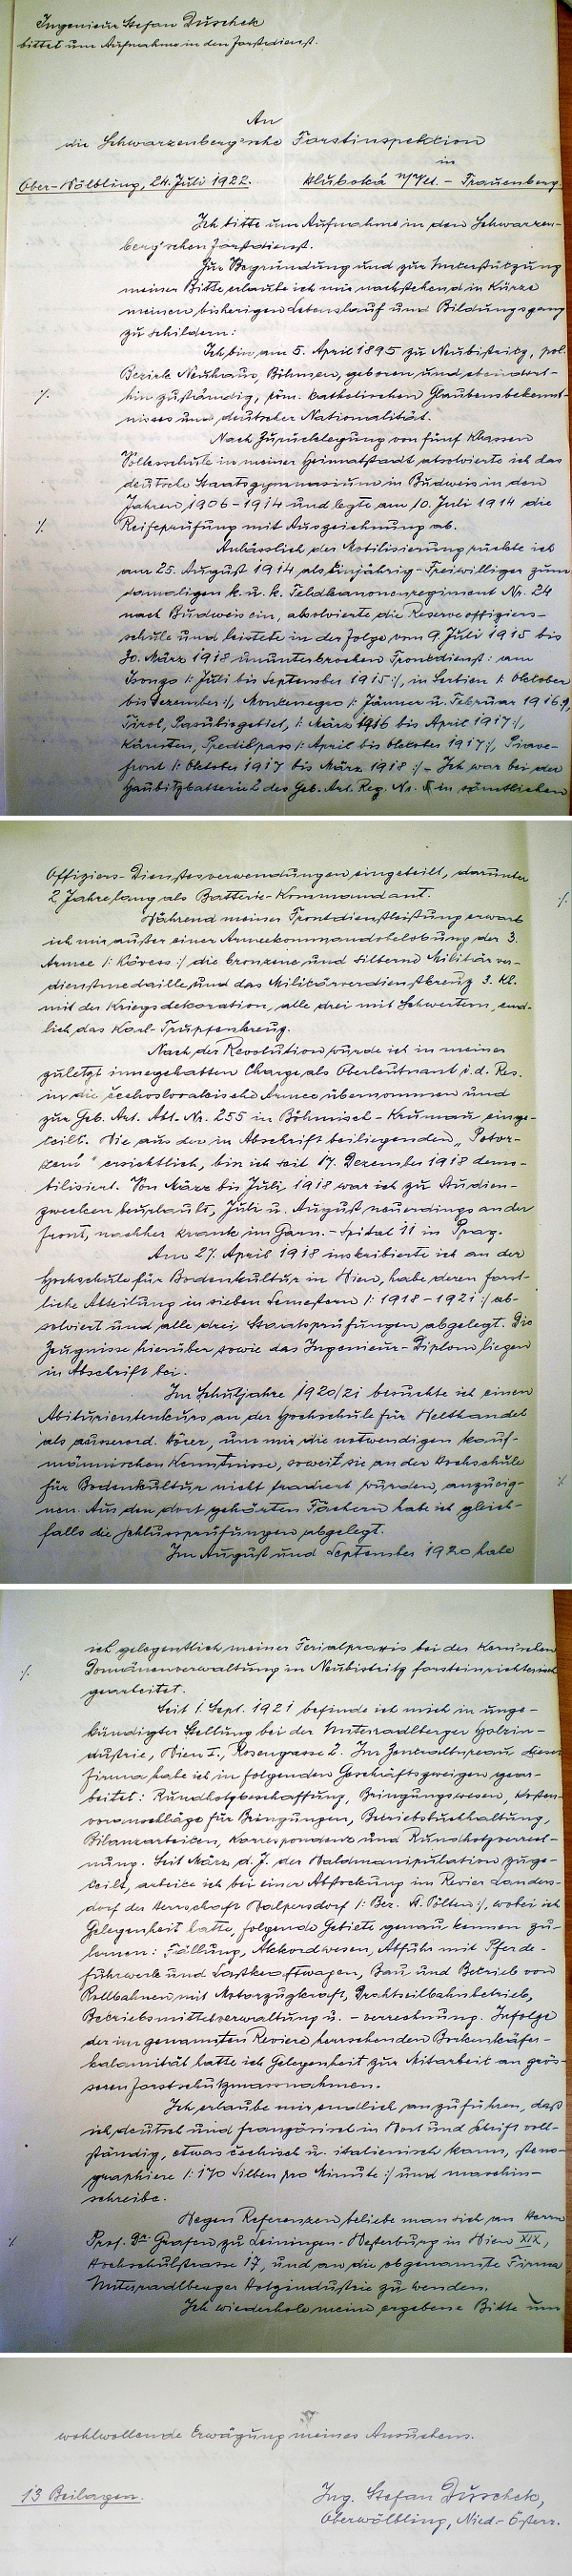 Jeho vlastnoruční životopis, jímž se ucházel v roce 1922 o přijetí do schwarzenberských služeb